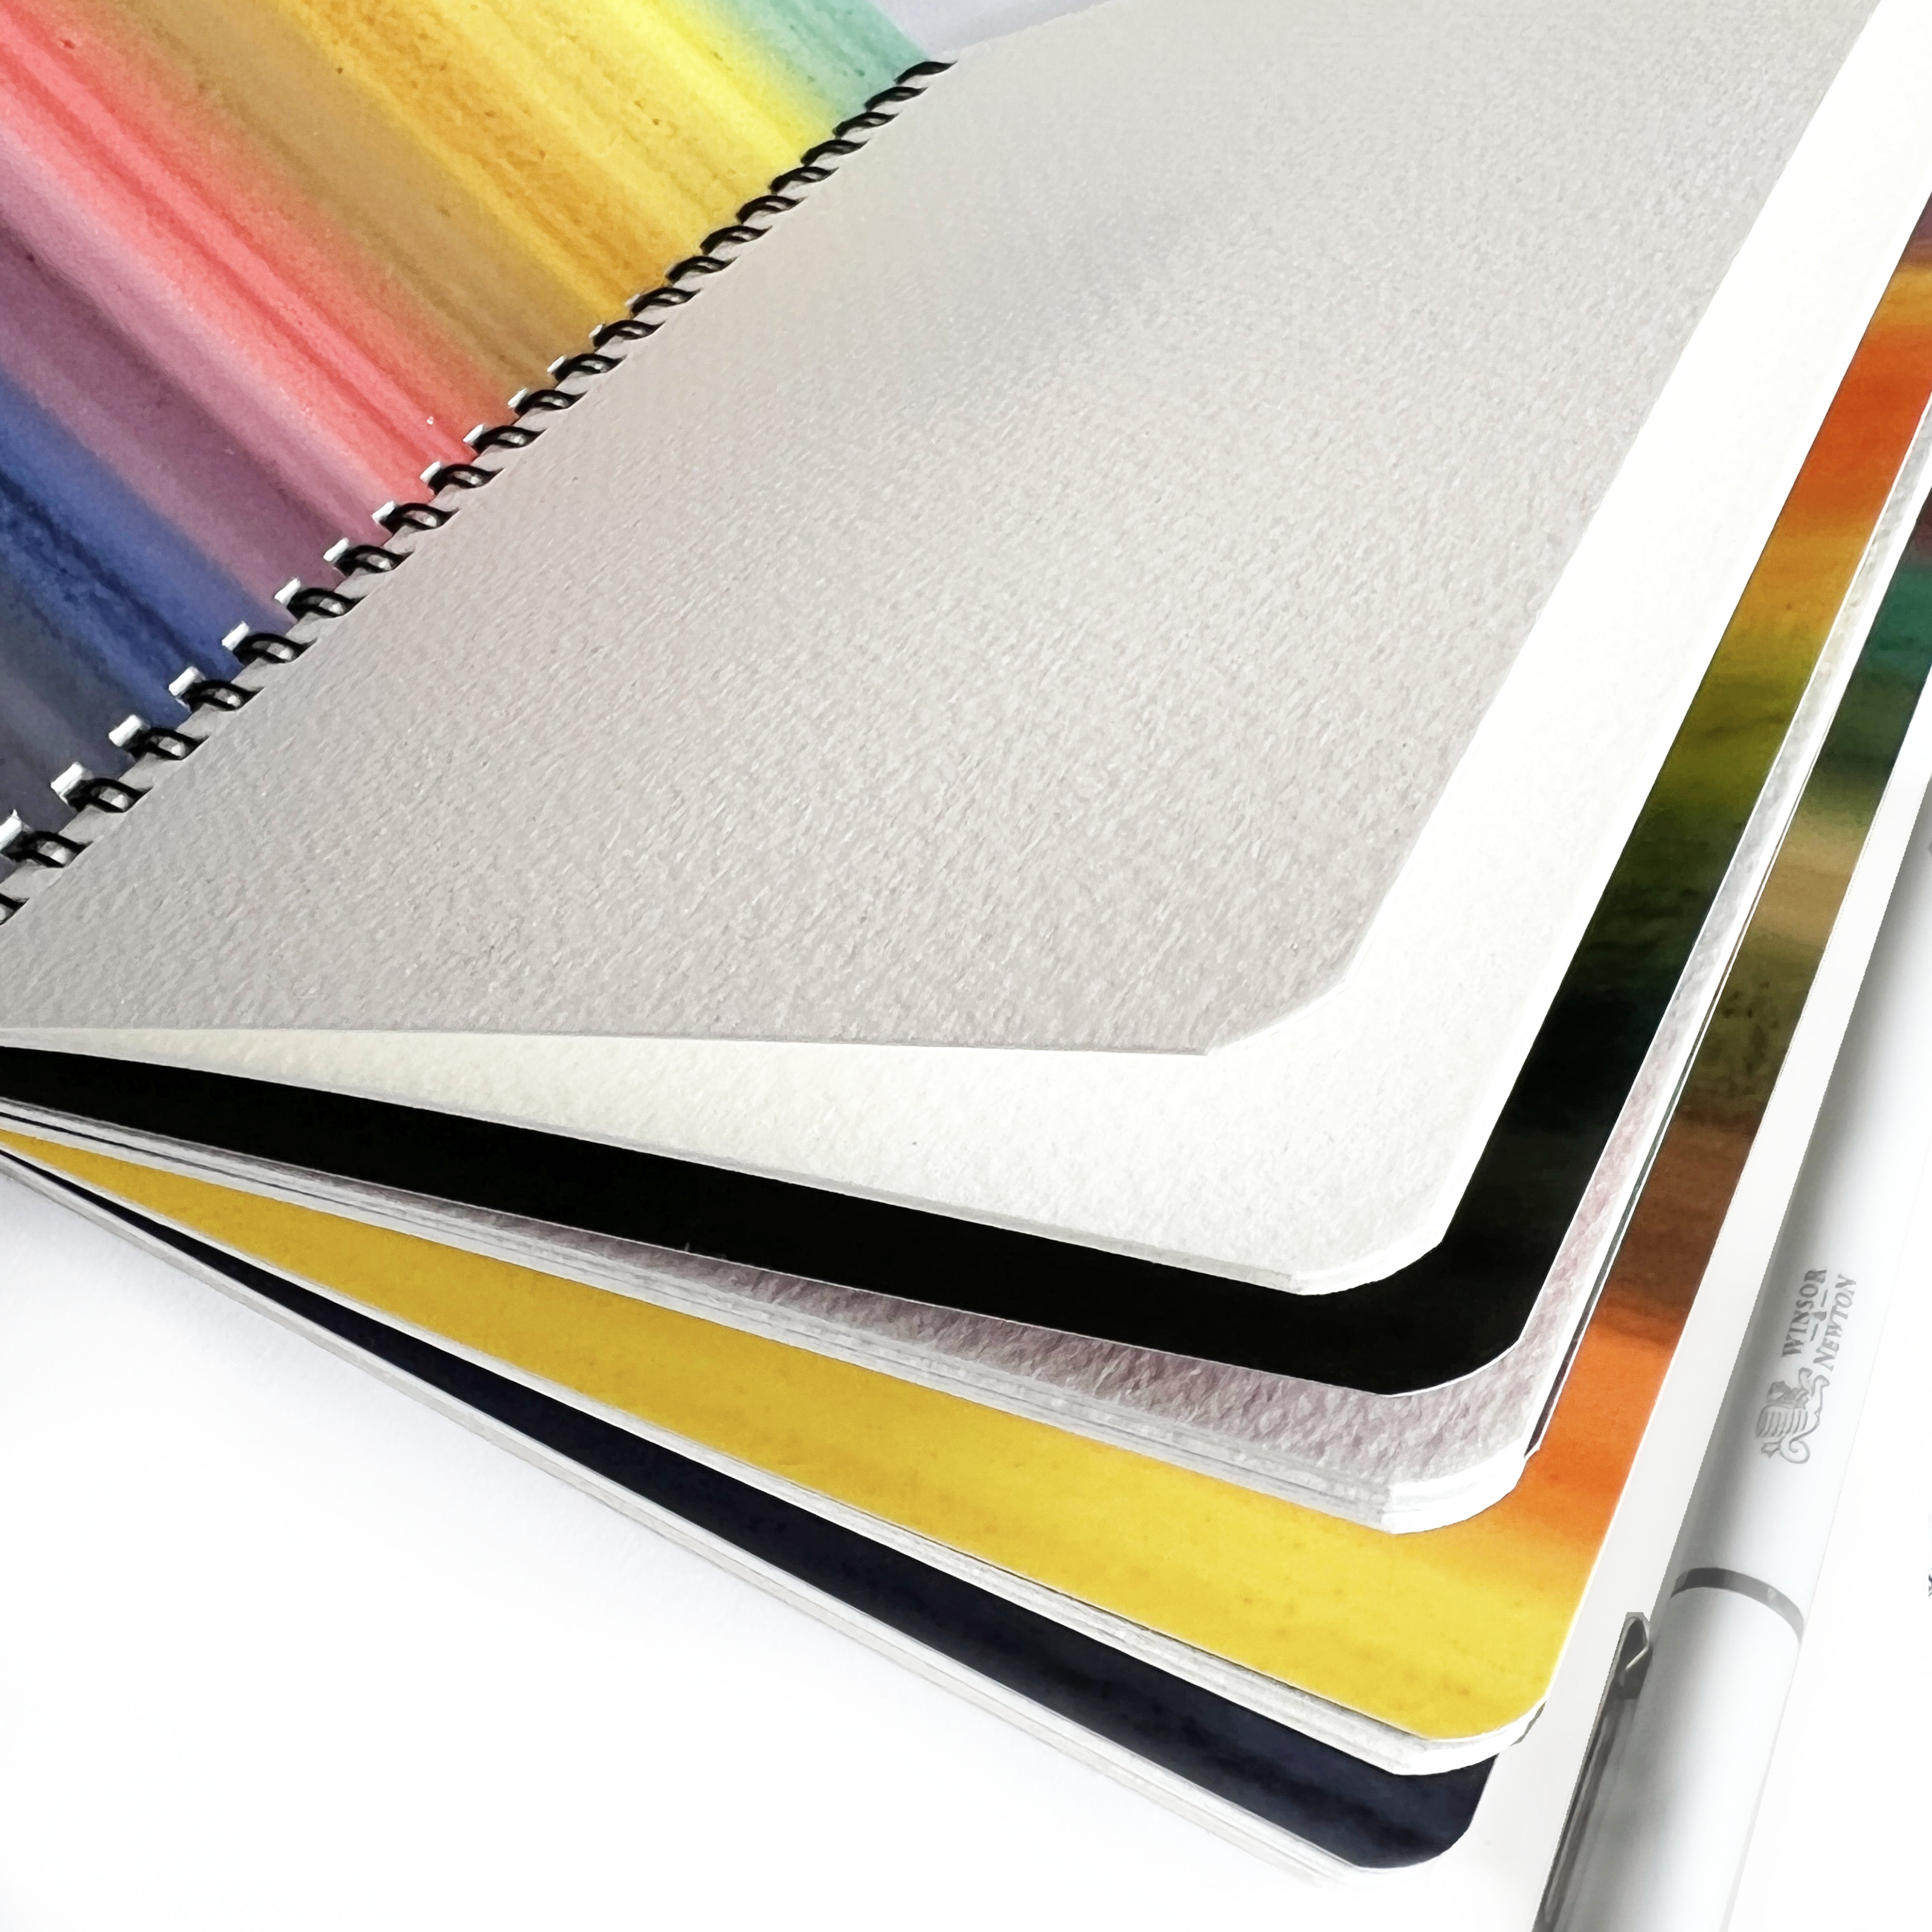 Refillable Watercolor Pens 96 Colors – Nuages ​​blancs